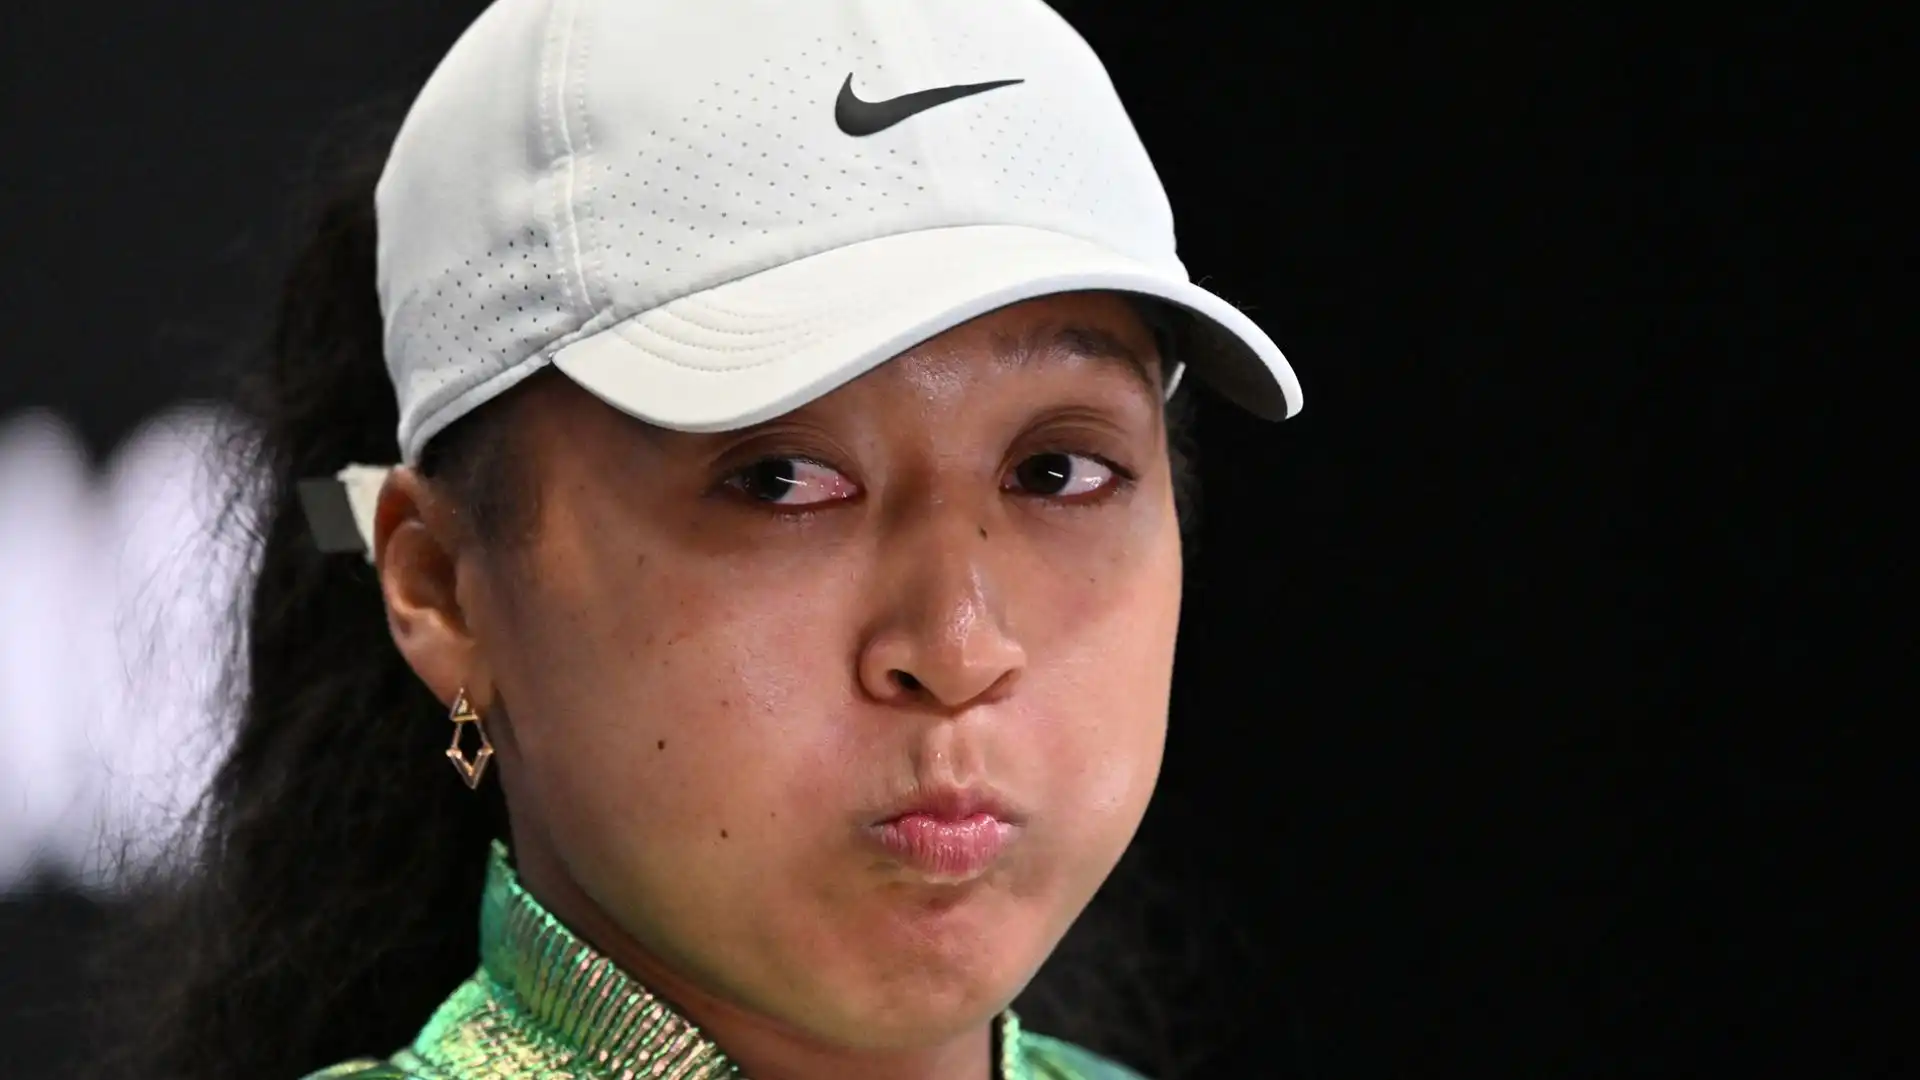 La tennista giapponese tornava in campo dopo una lunga pausa di 15 mesi e una maternità, e non poteva pretendere troppo contro la numero 19 del mondo